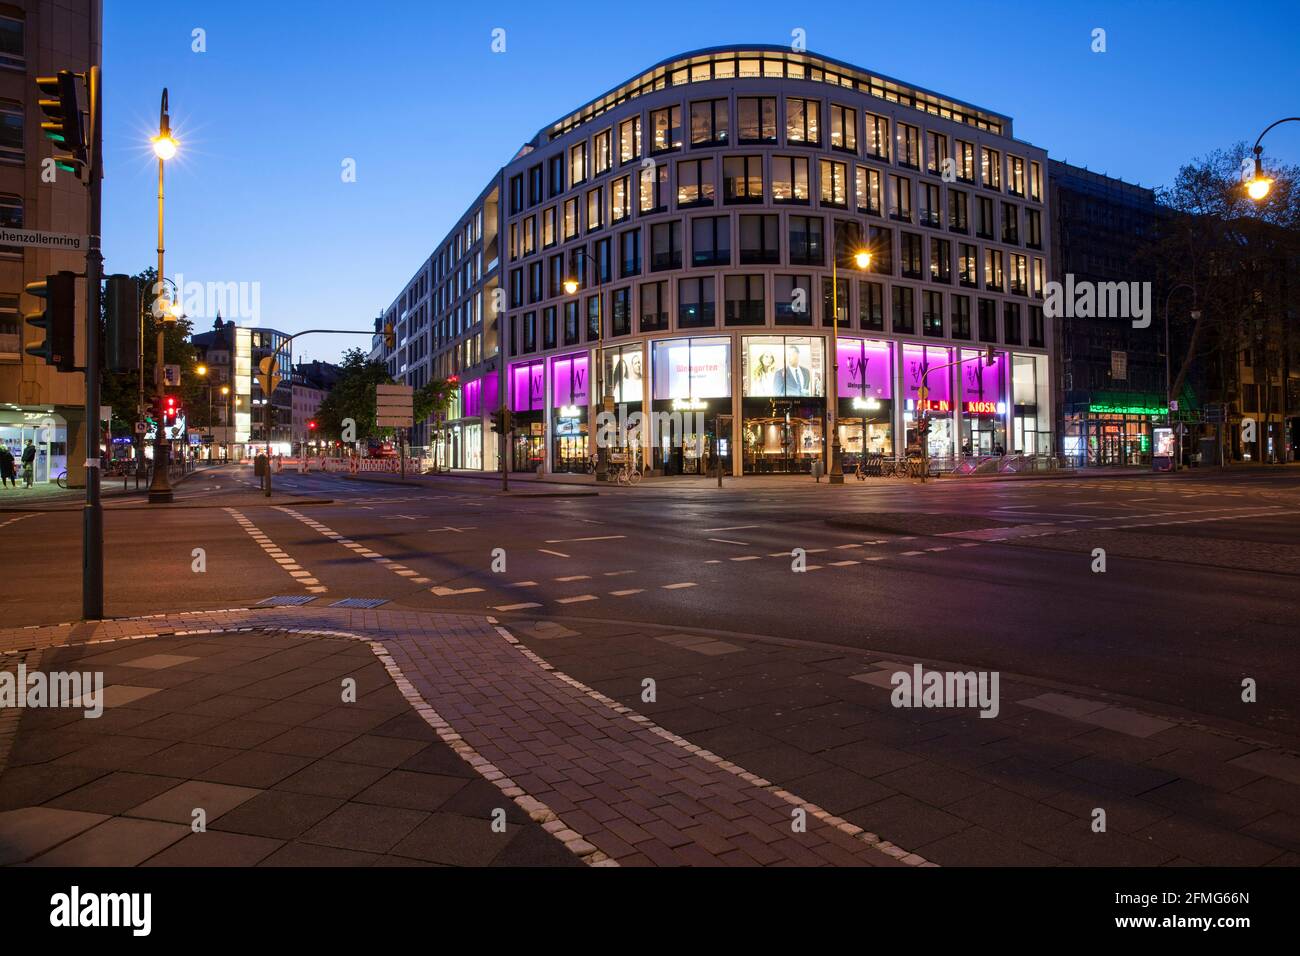 Coprifuoco dalle 21:00 durante il blocco della corona pandemia il 5 maggio. 2021. La strada deserta Hohenzollernring in piazza Friesenplatz, Colonia, Germania. Foto Stock